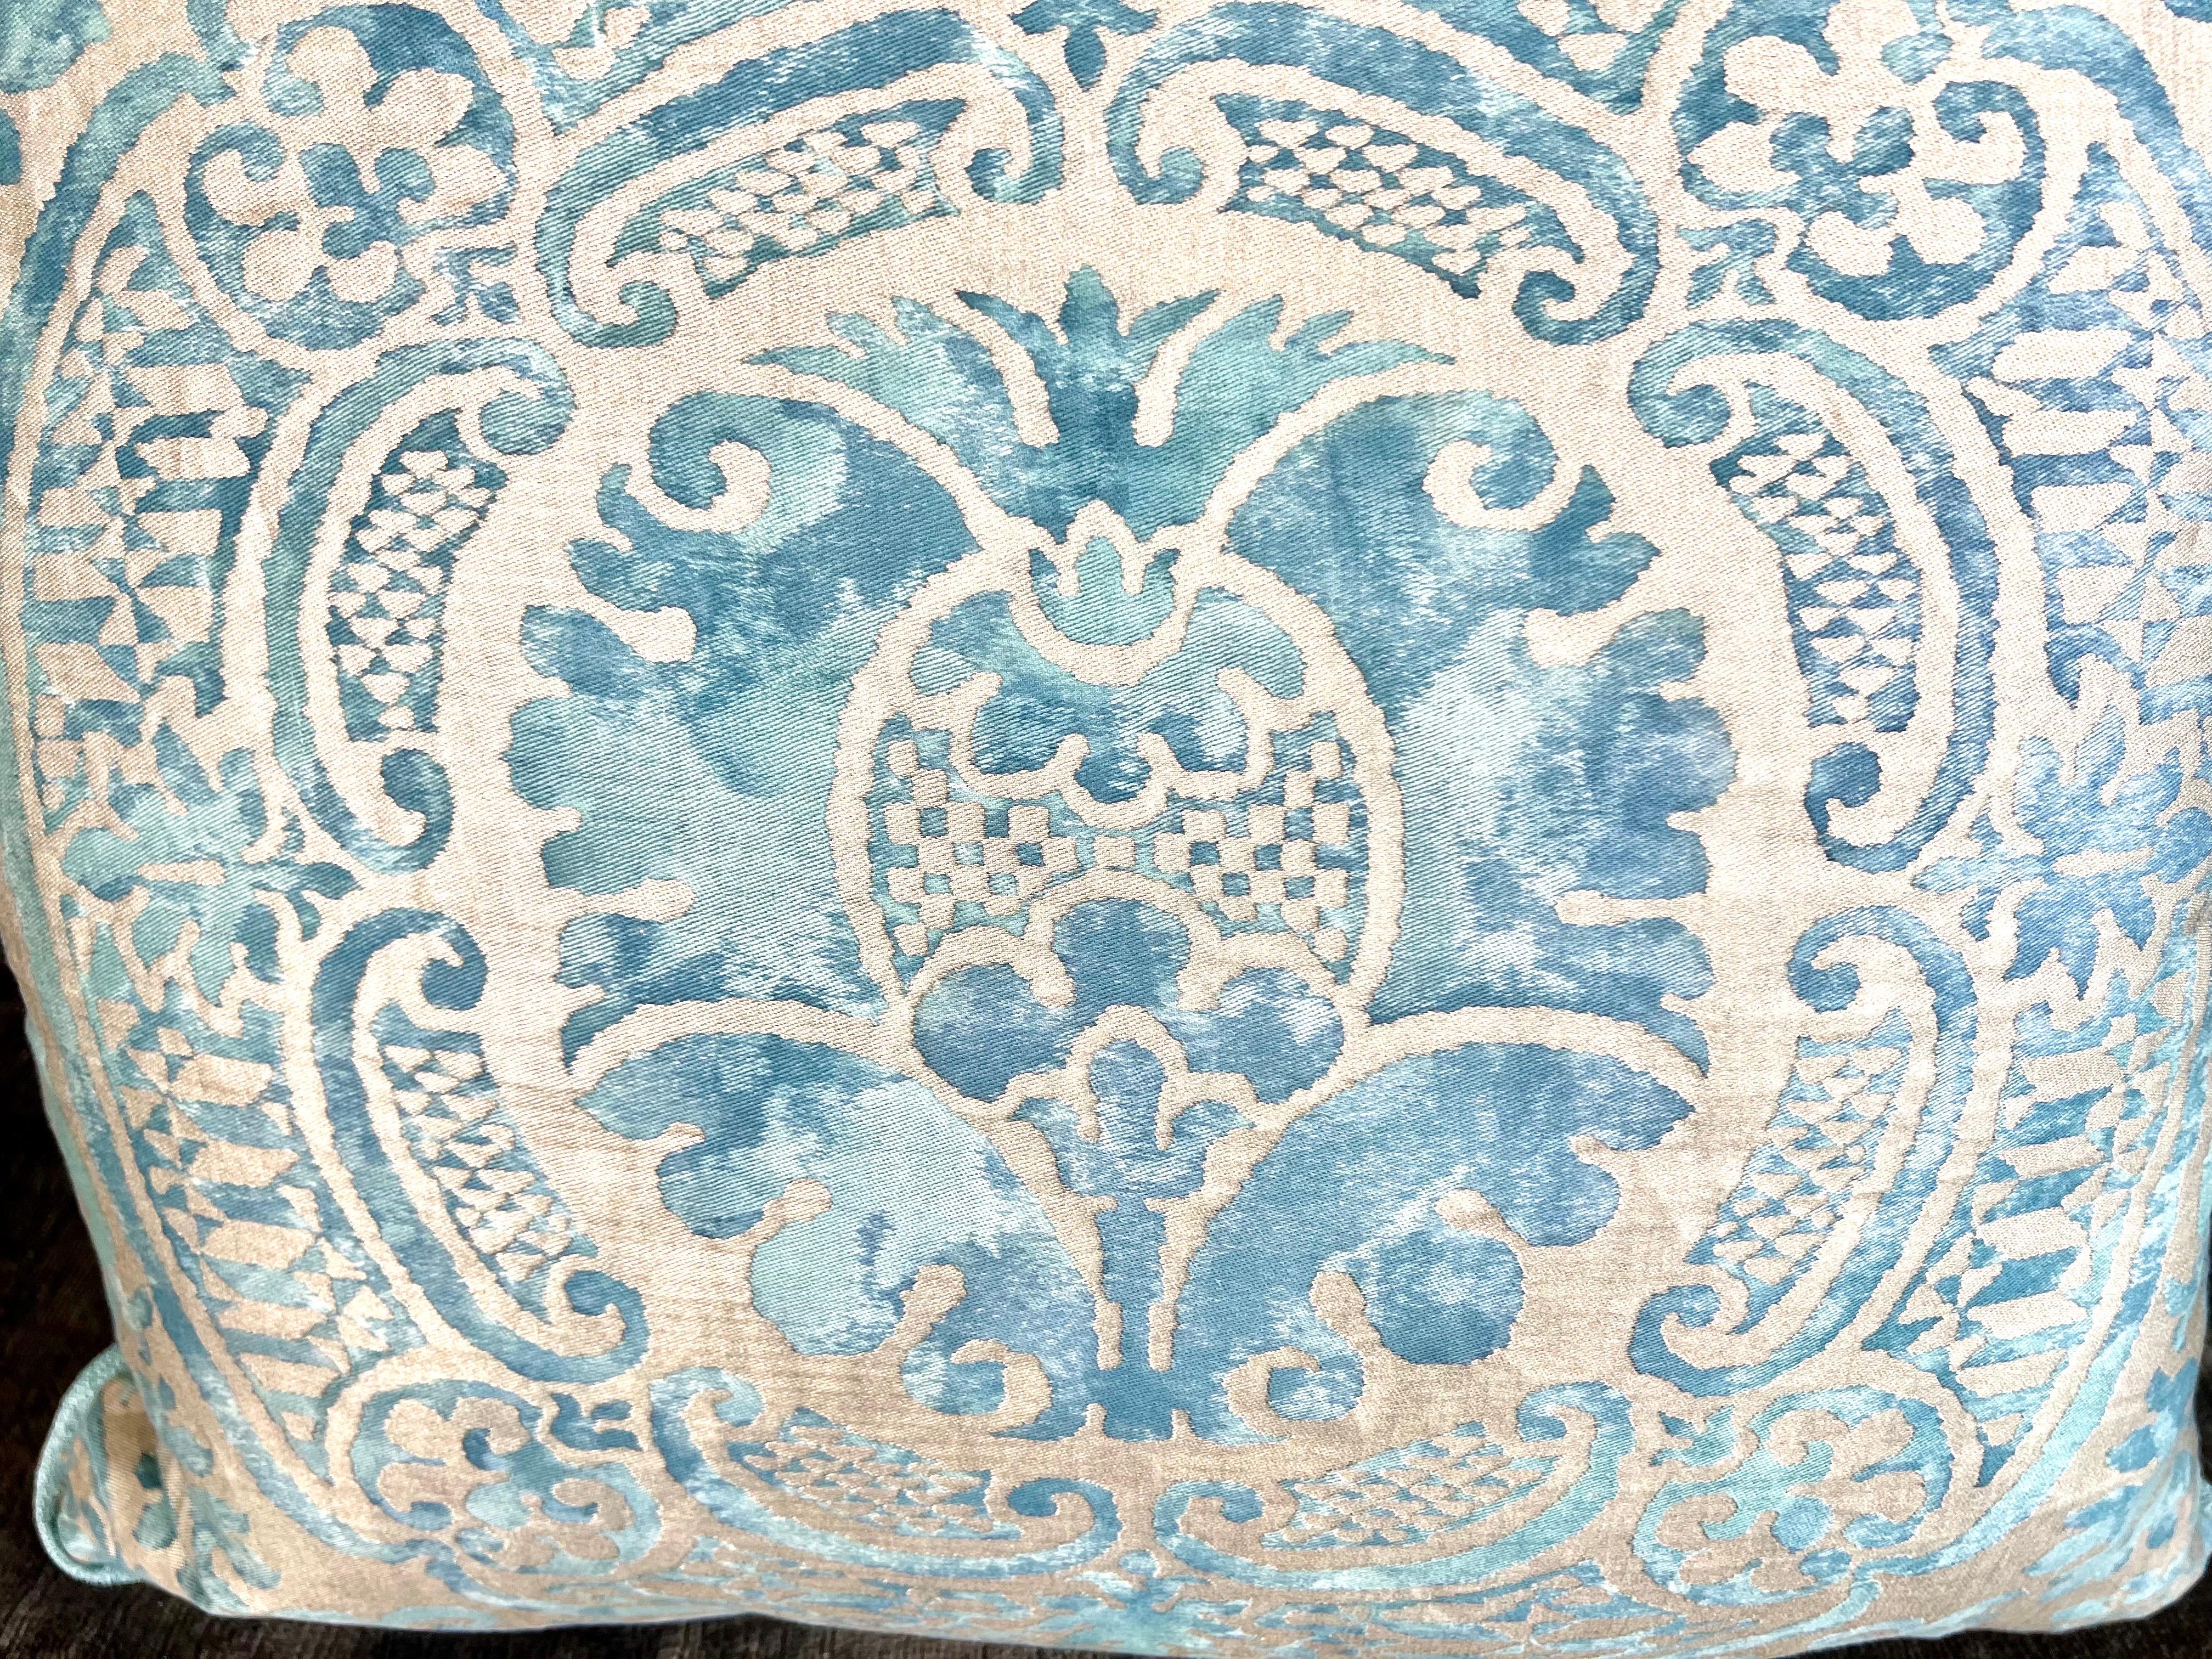 Textilkissen von Fortuny aus der Mitte des 20. Jahrhunderts mit dem Orsini-Muster.  Die verschiedenen Blautöne, die sich auf einem silber-goldenen Hintergrund vermischen, erzeugen einen faszinierenden Aquarelleffekt.  Der weiche, silbrig-blaue